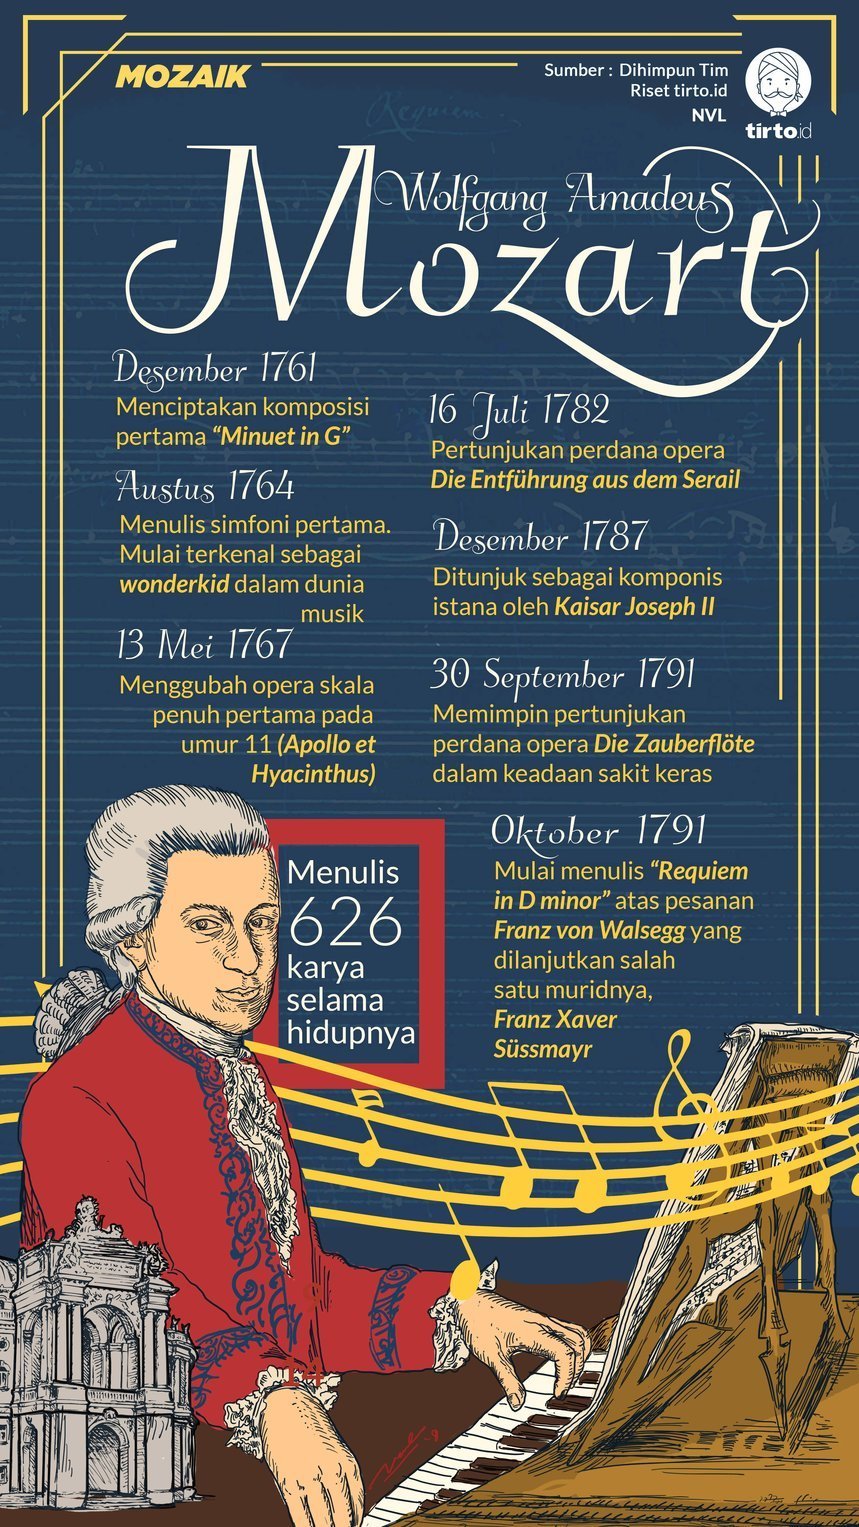 Zaman pada komponis yang mozart tokoh hidup adalah Wolfgang Amadeus